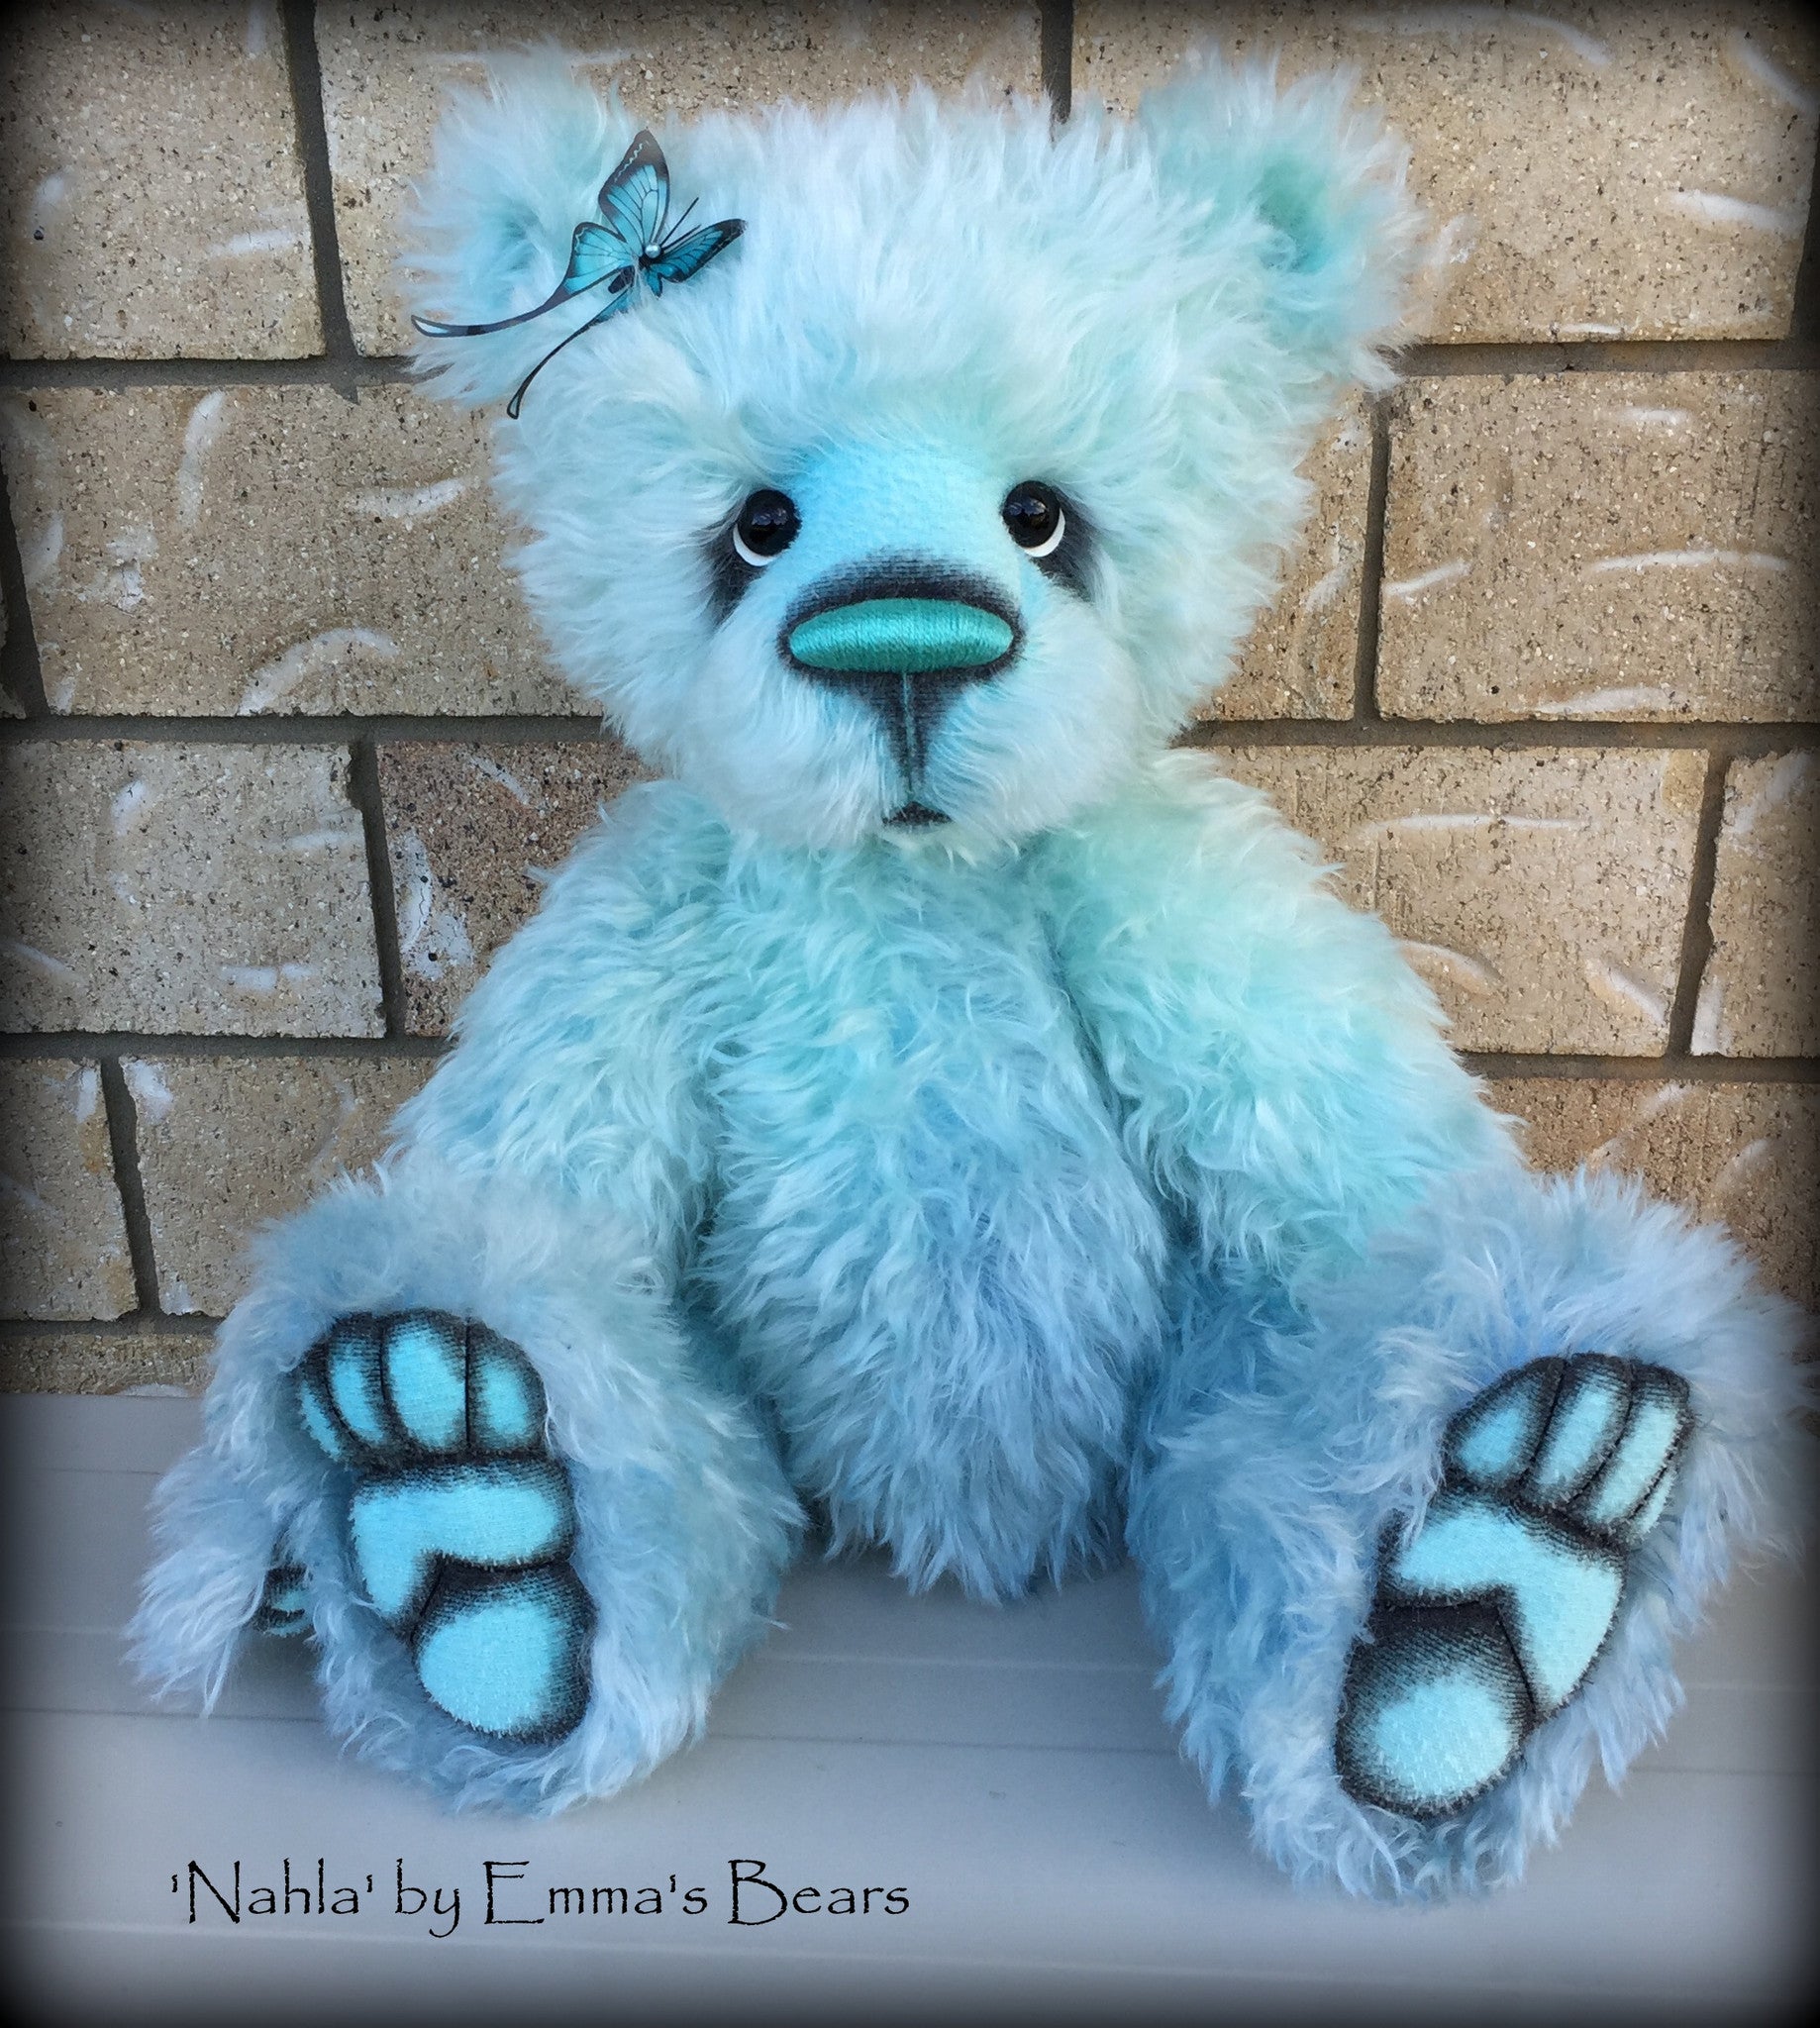 Nahla - 24IN hand dyed mohair bear by Emmas Bears - OOAK